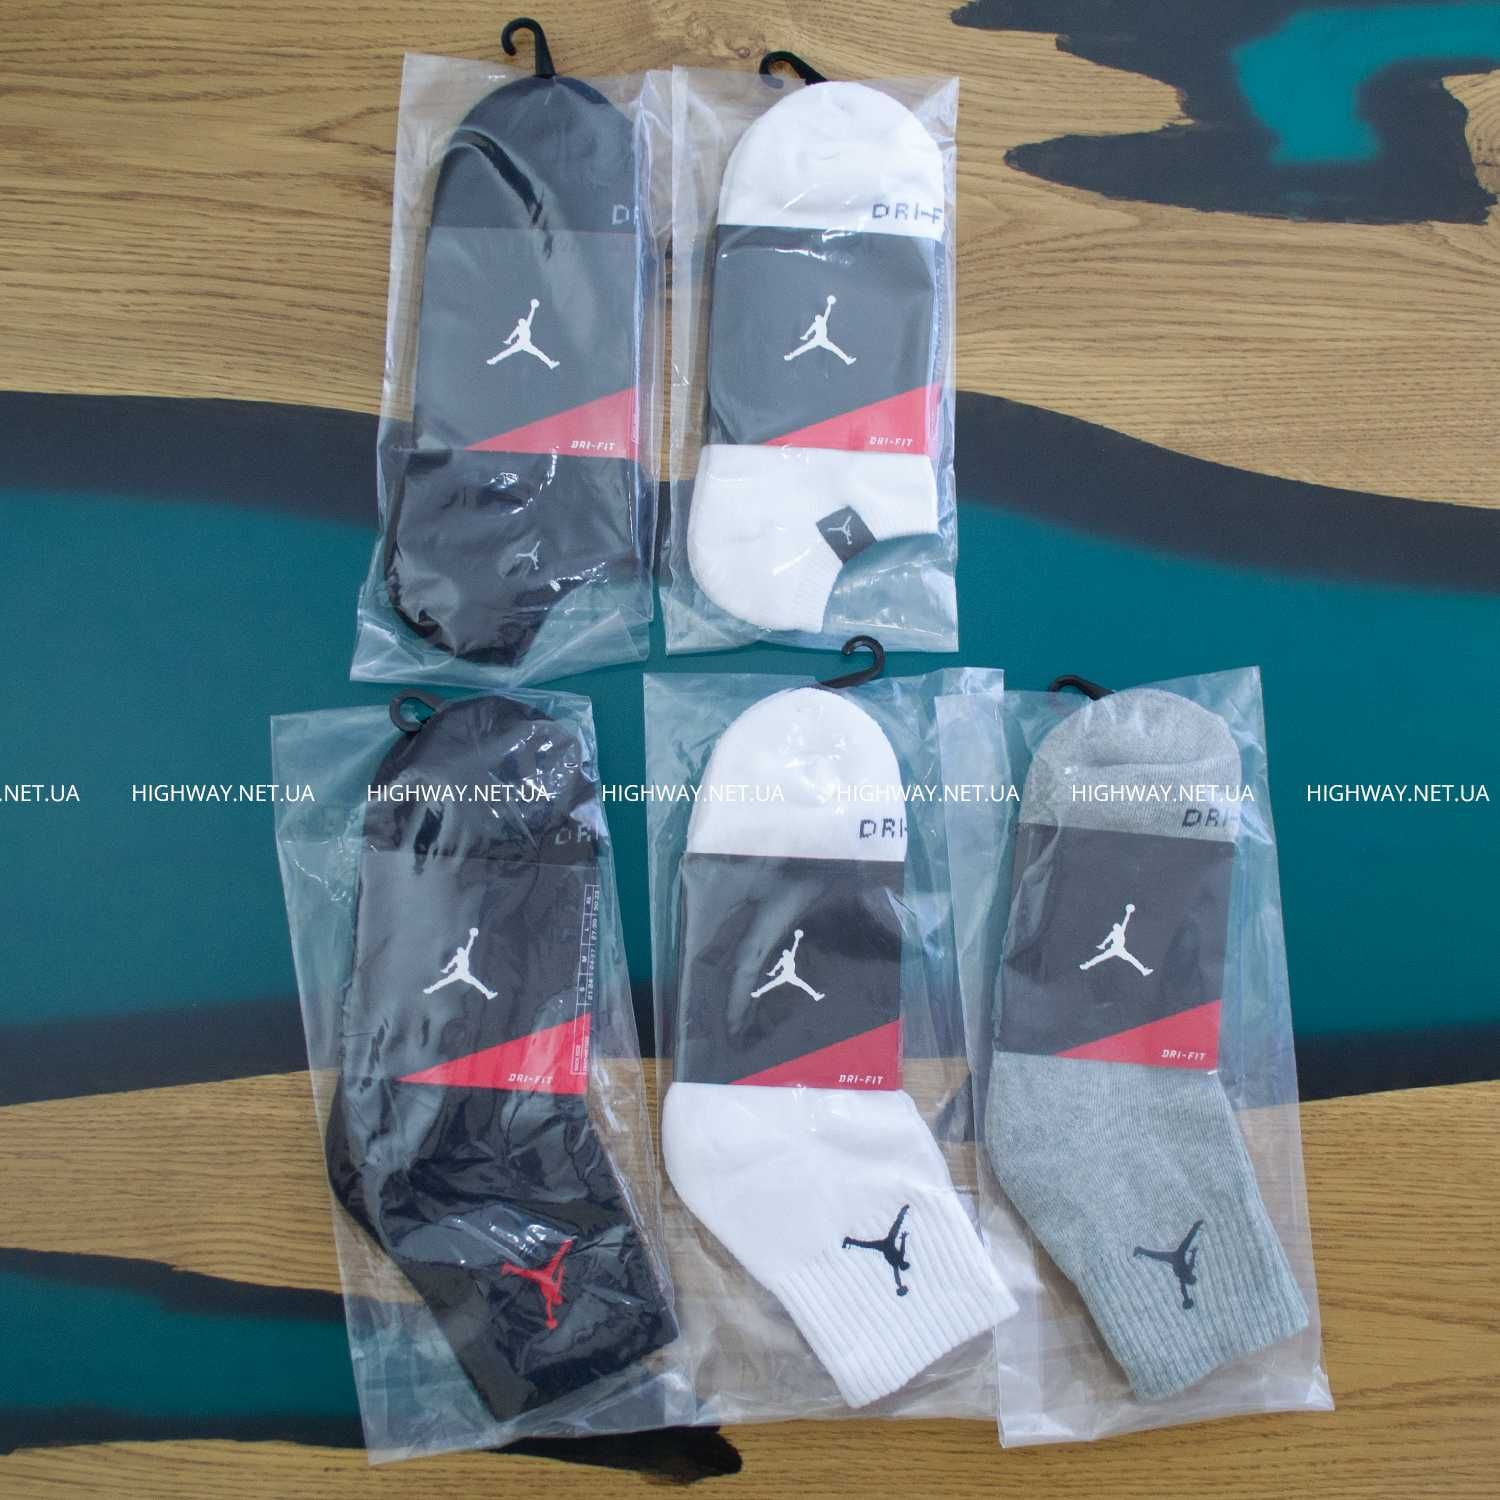 【HighWay】 Шкарпетки Jordan Dri-Fit носки махра осень-зима nike спортив